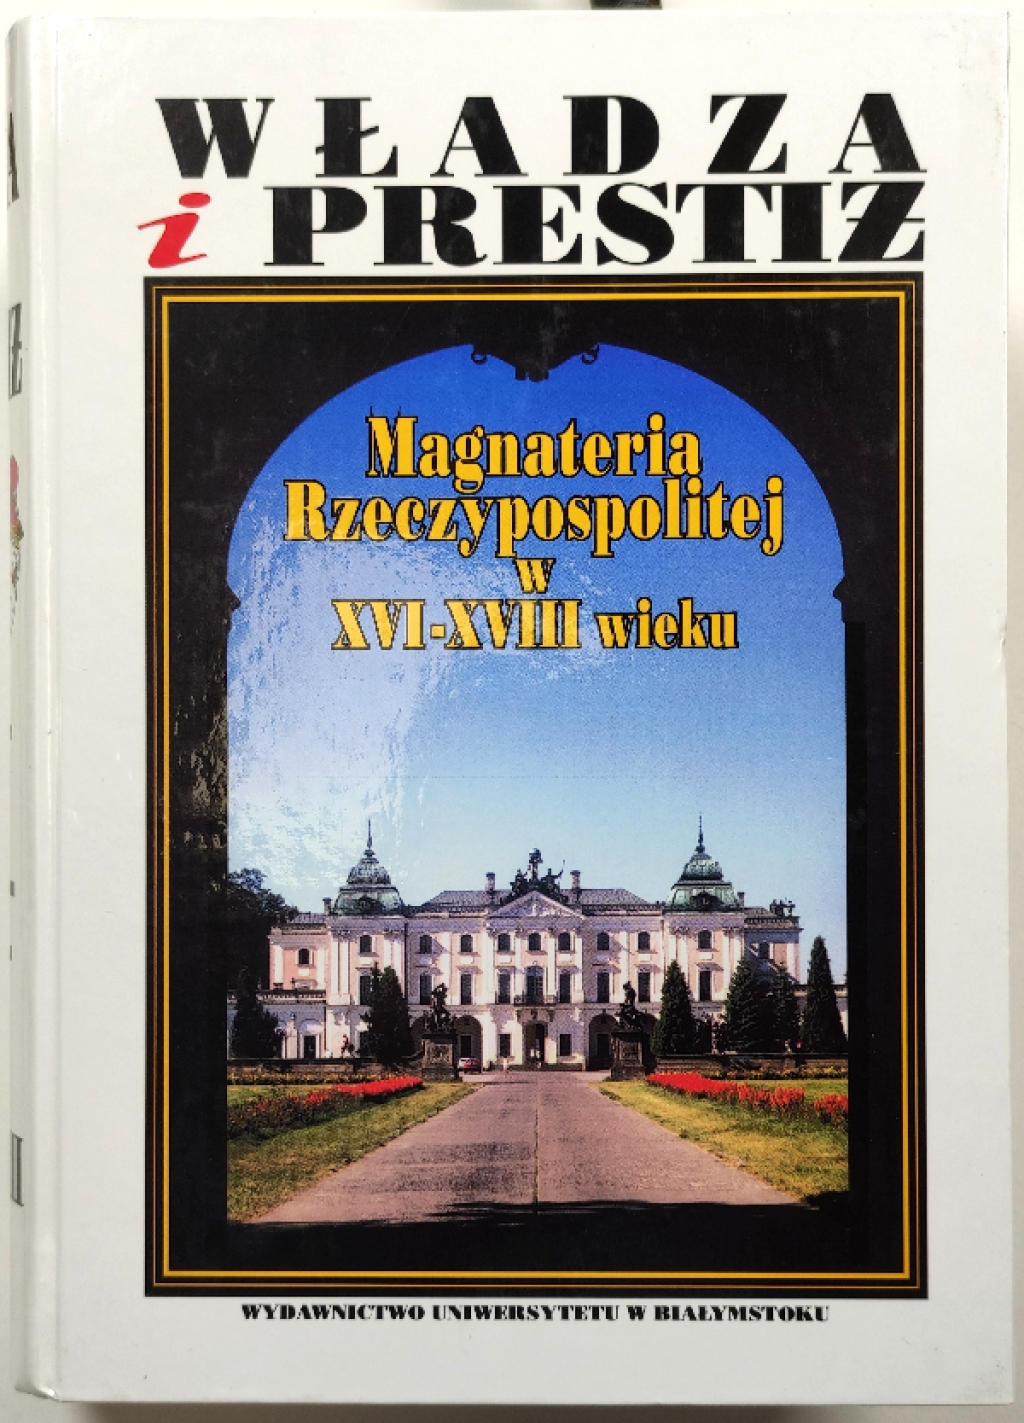 Władza i prestiż. Magnateria Rzeczypospolitej w XVI-XVIII wieku